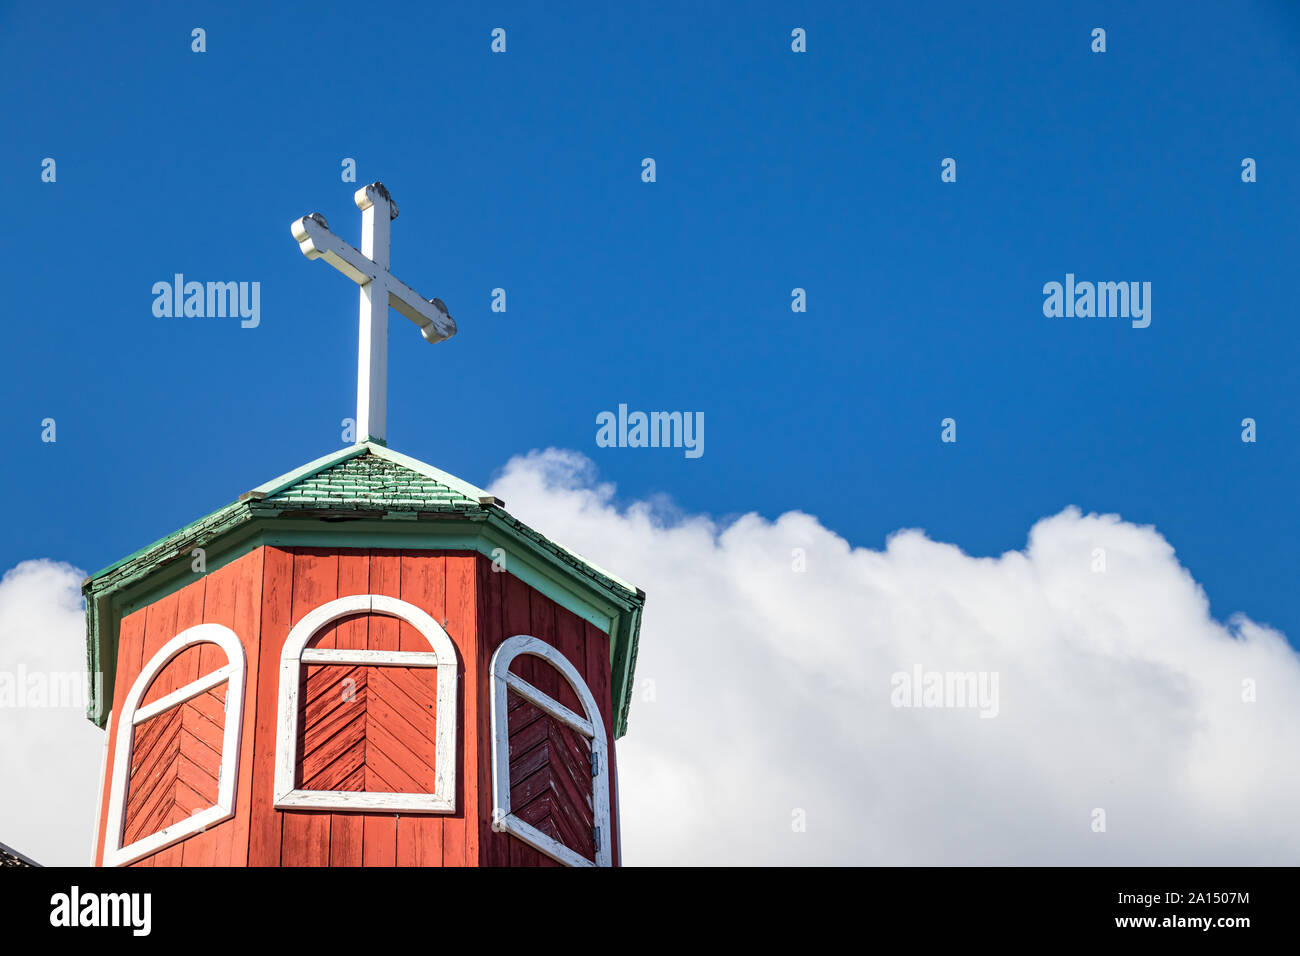 Le pavillon hexagonal avec une croix de l'Frelserens Kirke aussi connu comme l'église de Notre Sauveur. Qaqortoq - Julianehab, Groenland Banque D'Images